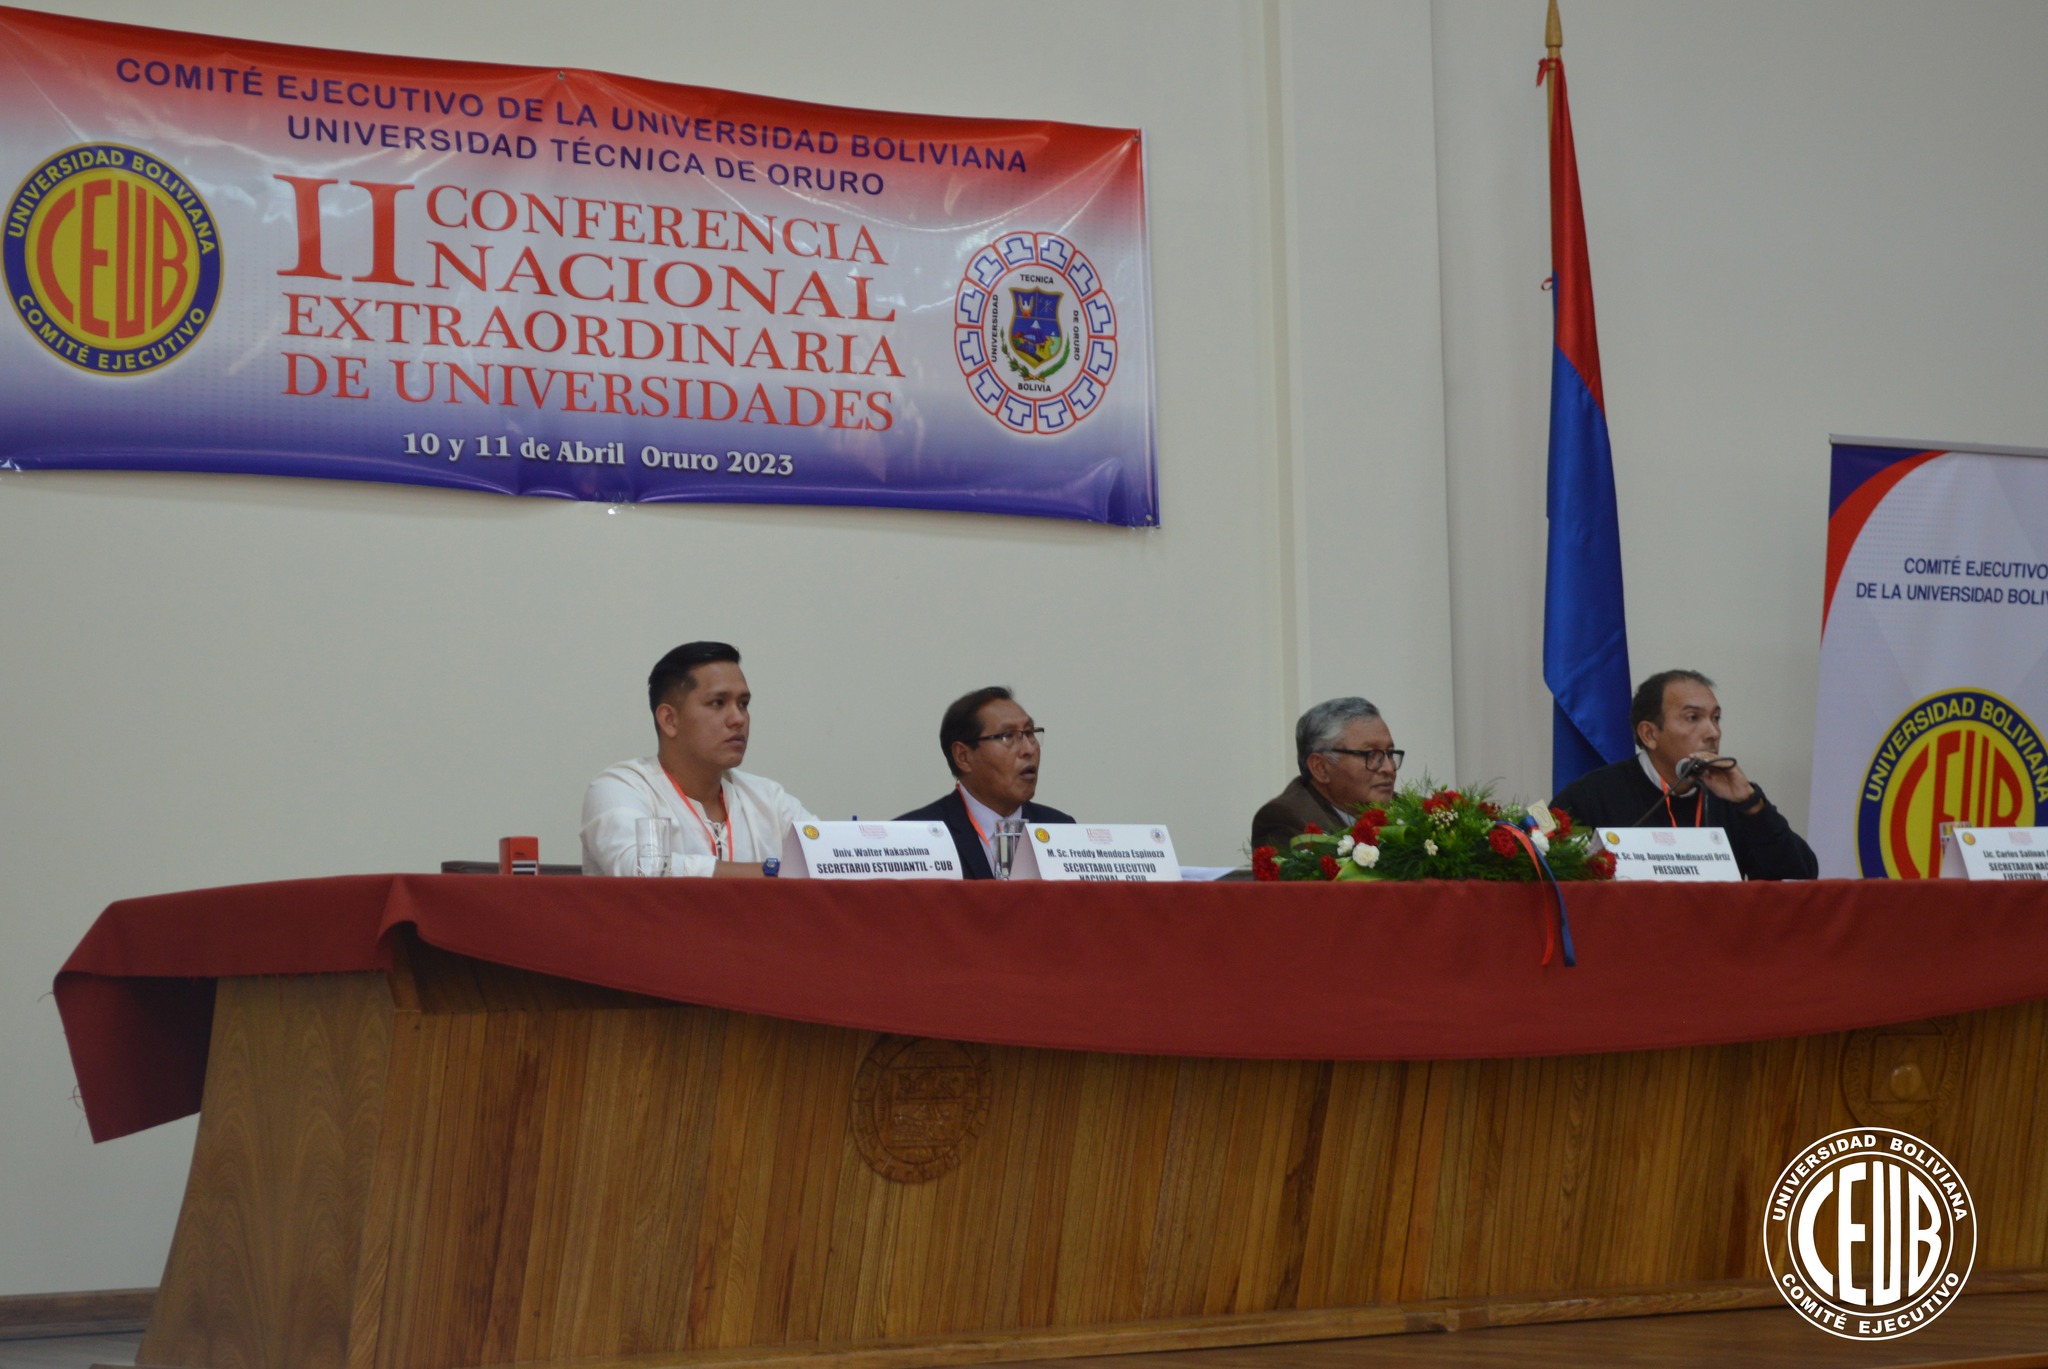 II Conferencia Nacional Extraordinaria de Universidades, en la Universidad Técnica de Oruro